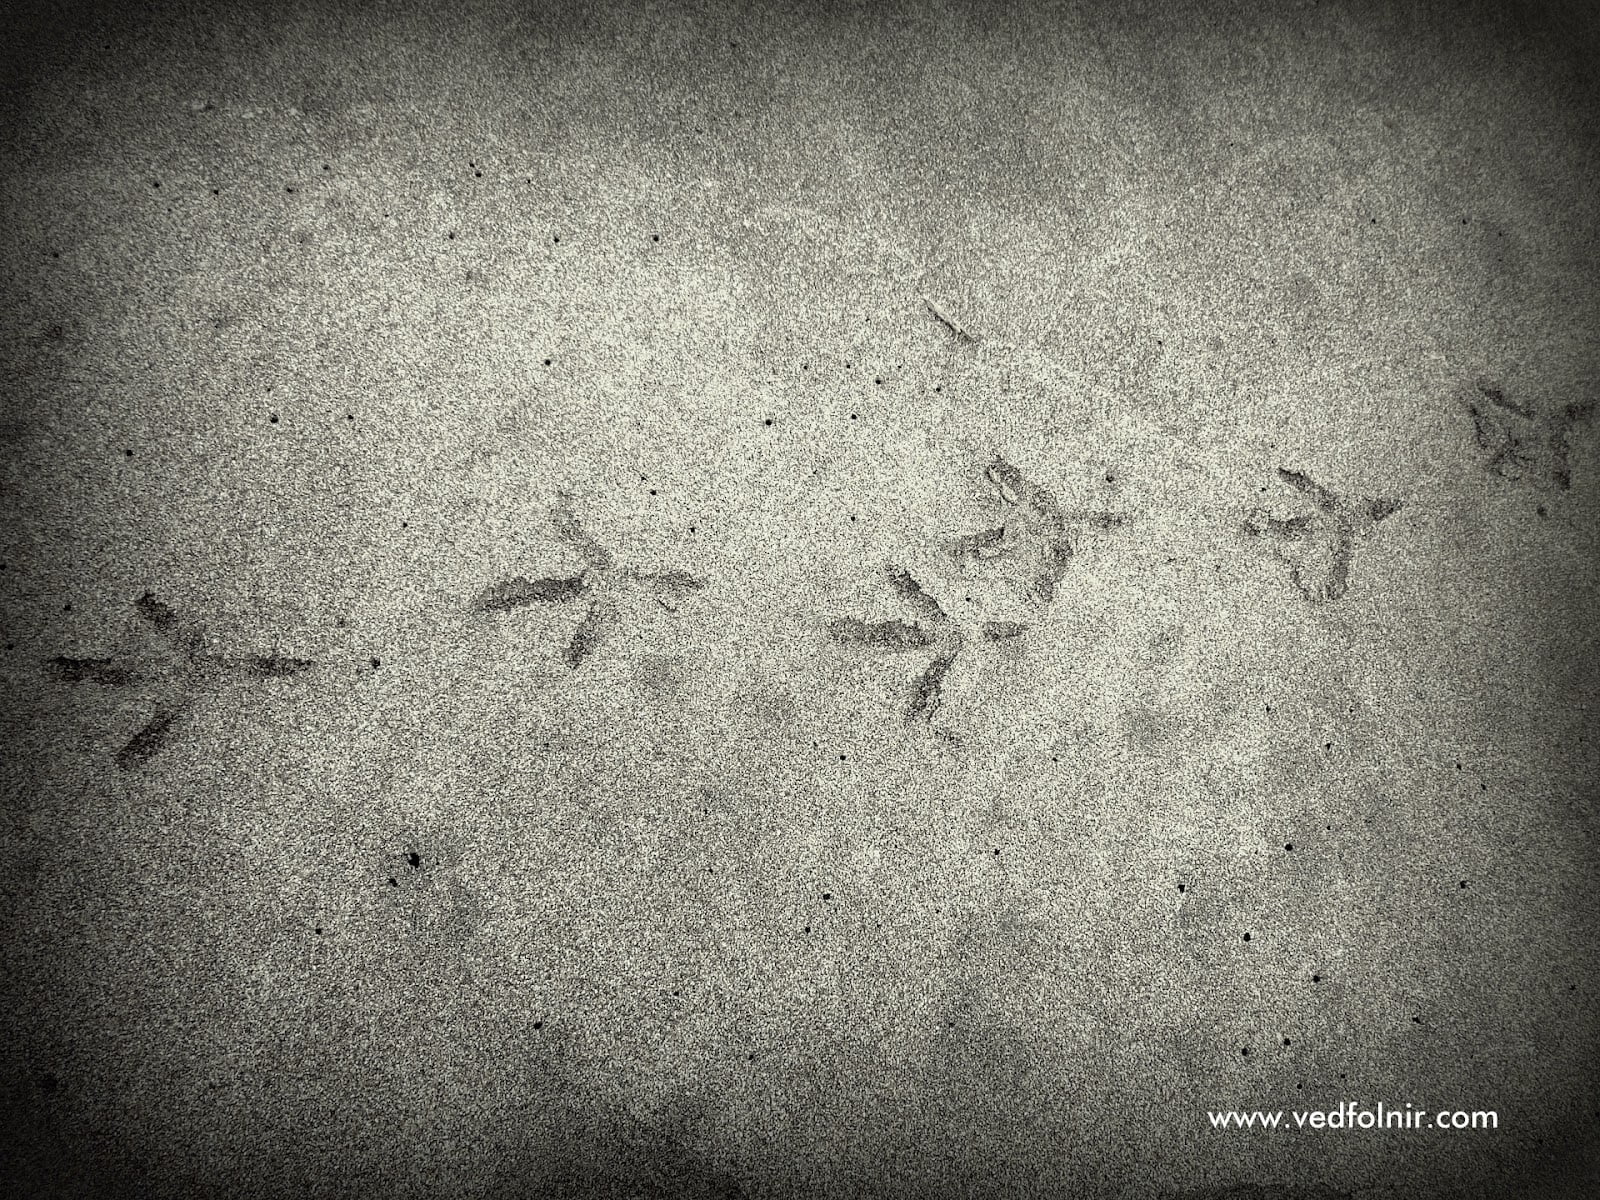 淡水沙崙海水浴場與沙灘 bird foorprint at tamsui beach sand 1